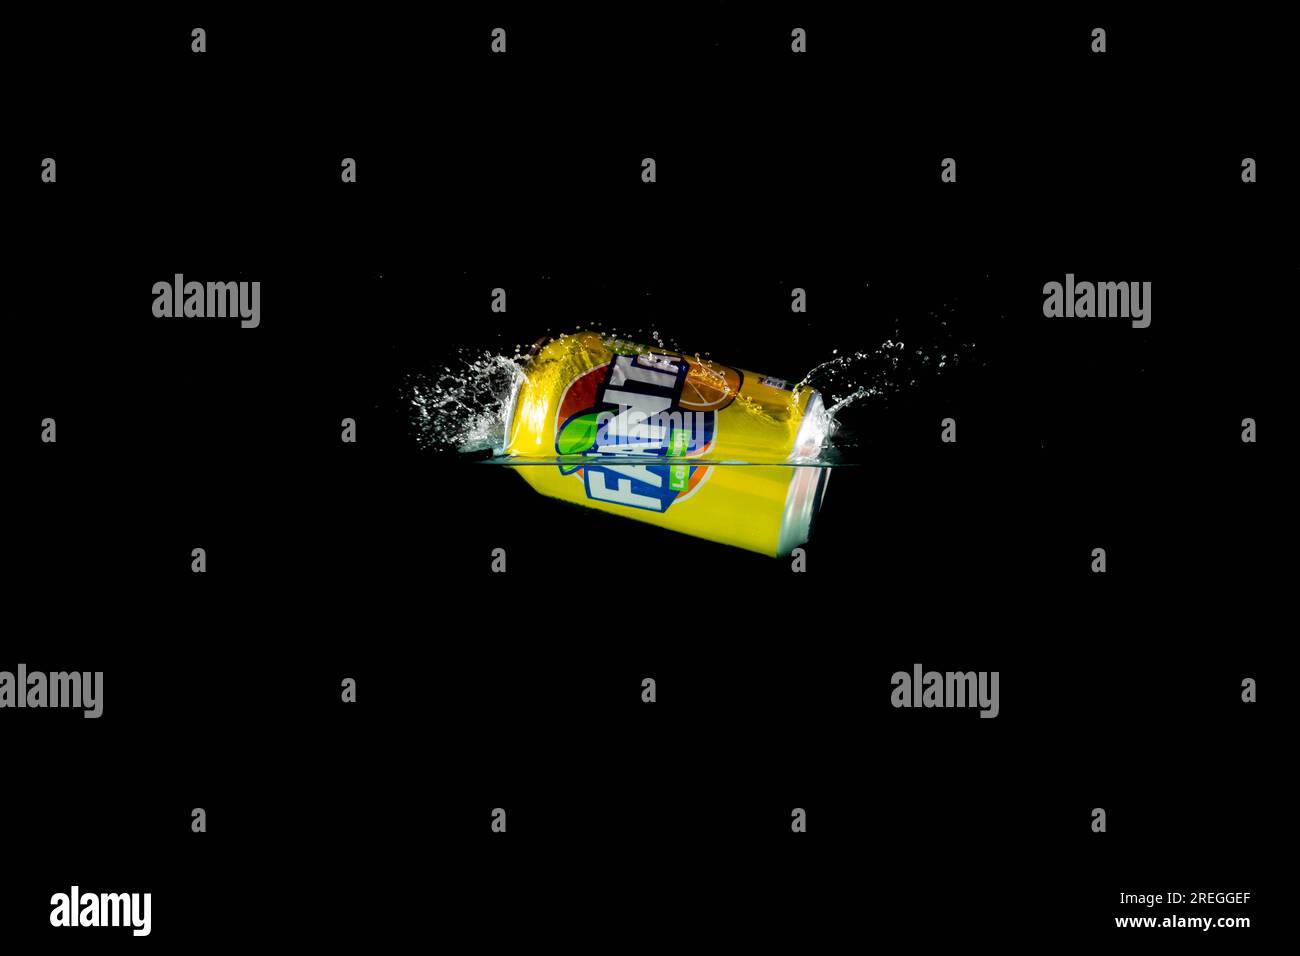 Londra, Regno Unito, 24 luglio 2023: Una lattina di limone Fanta che si getta in acqua su uno sfondo nero Foto Stock